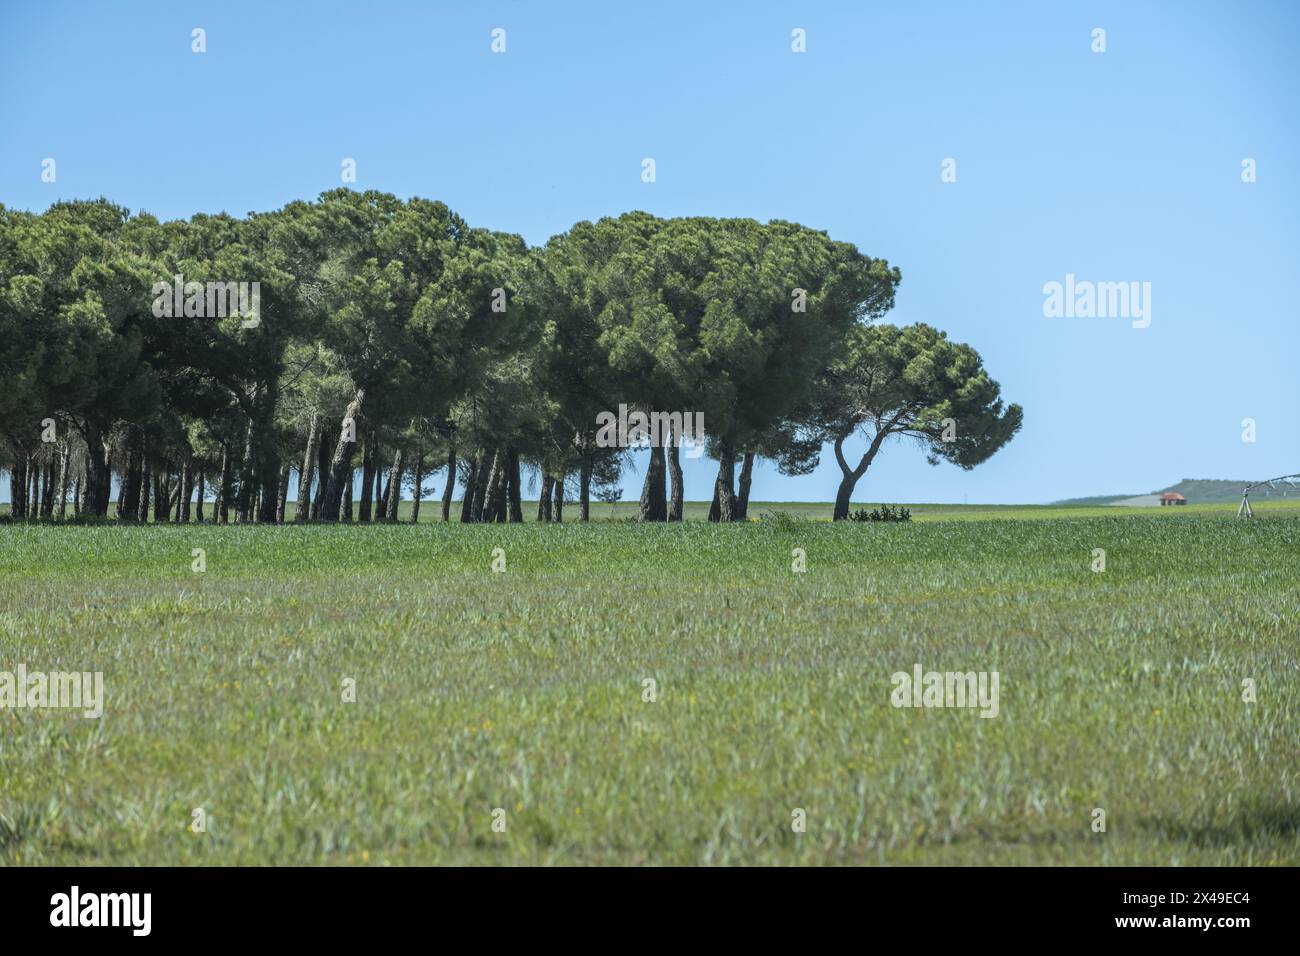 Einige schöne Felder mit grünem Gras und eine Landschaft mit einem kleinen Wald aus weichen Kiefern an einem Tag mit klarem blauem Himmel Stockfoto